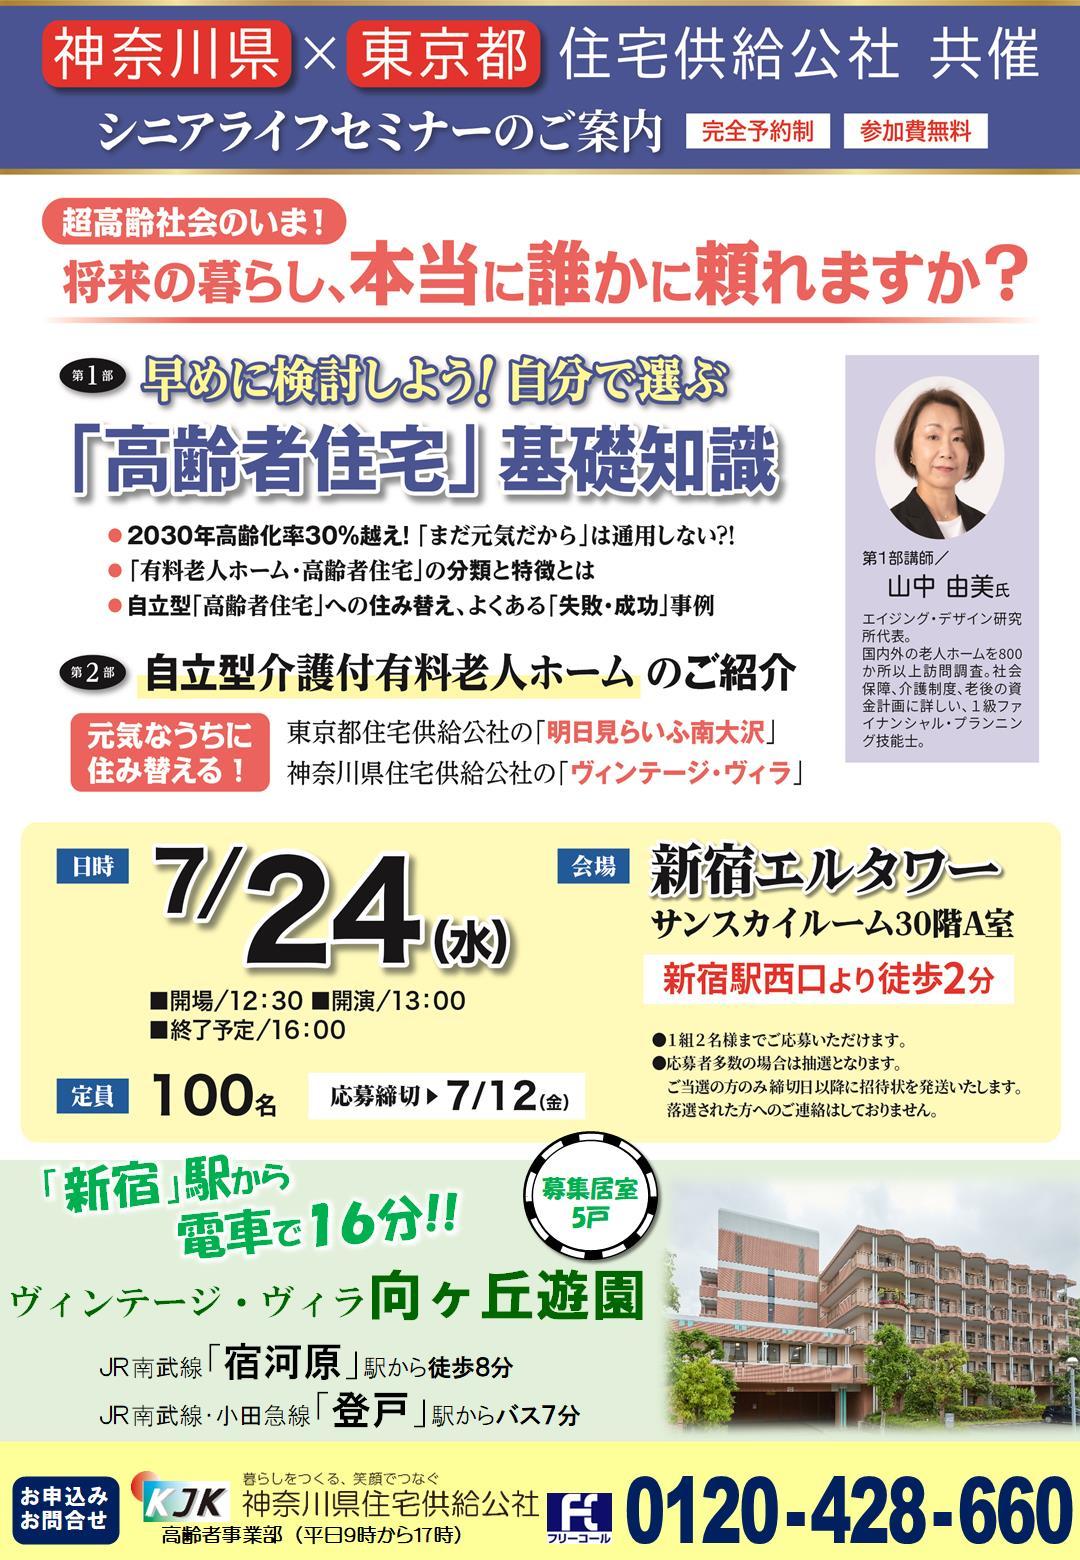 7月24日(水) 神奈川県住宅供給公社×東京都住宅供給公社 共催セミナー開催の画像